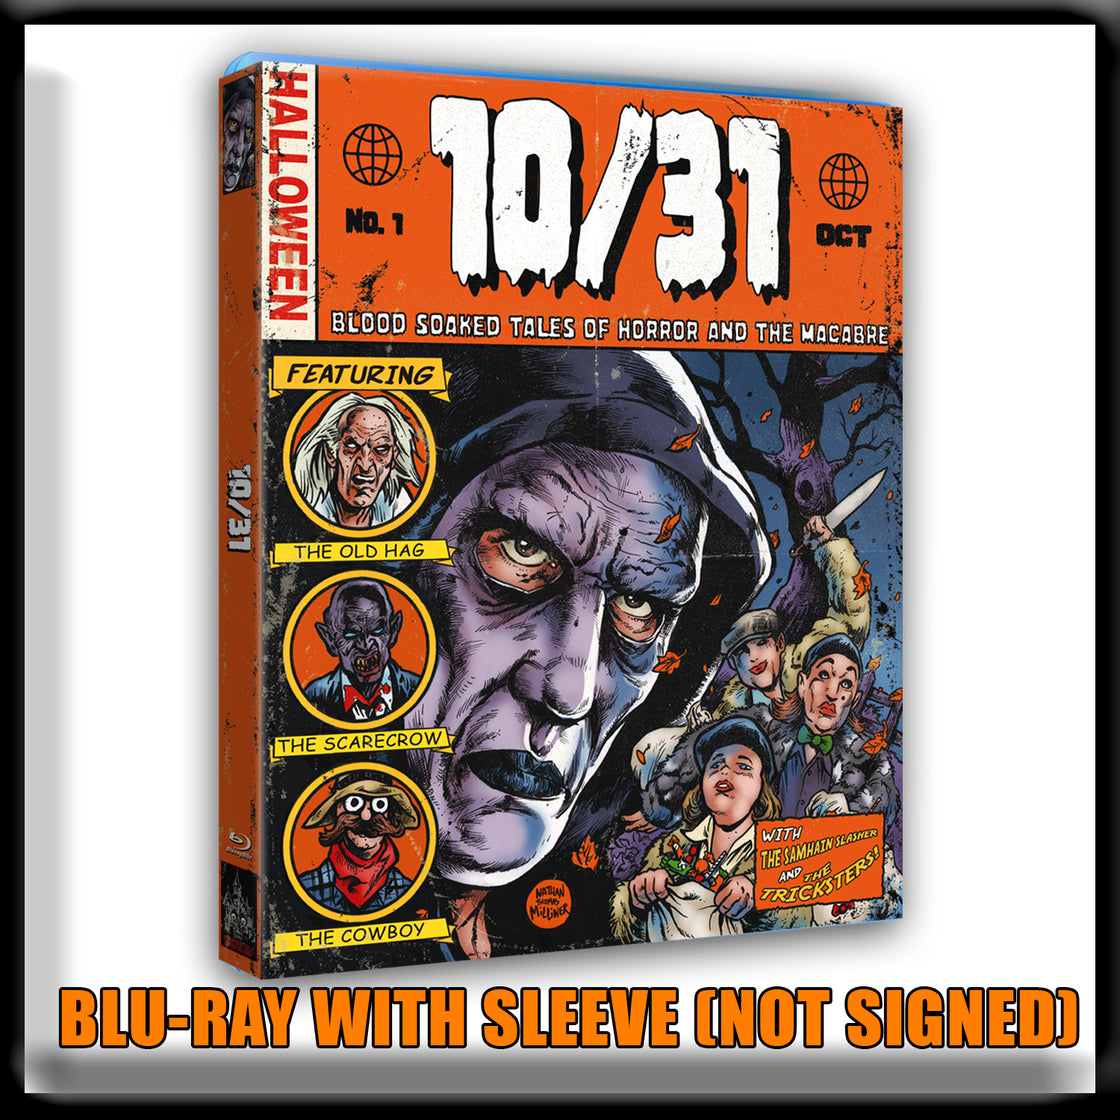 10/31 - Special Collectors Edition (Blu-ray)